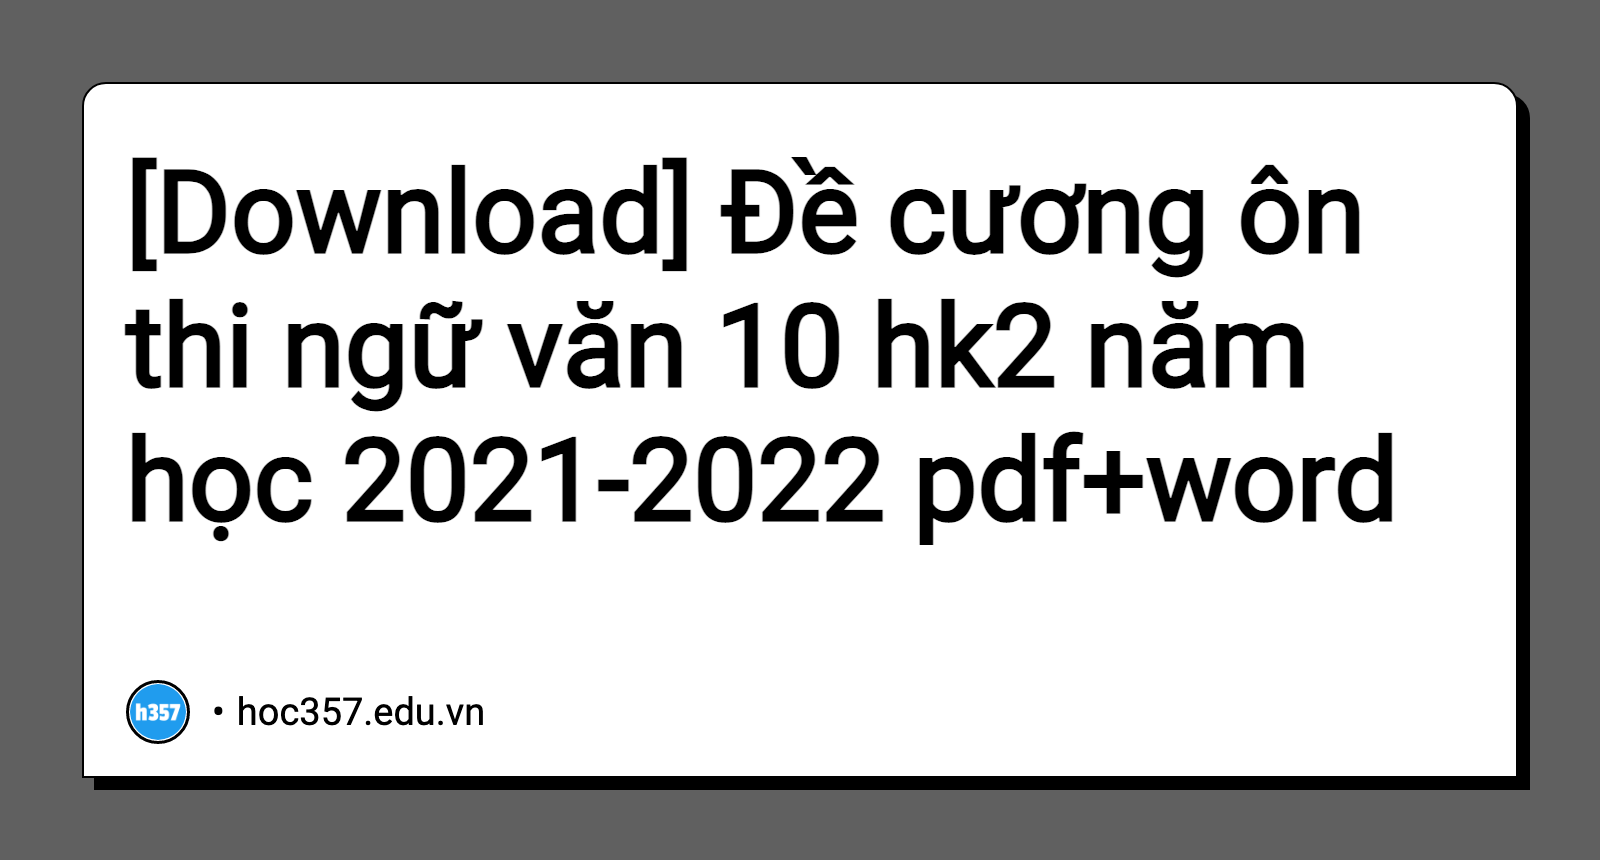 Hình minh họa Đề cương ôn thi ngữ văn 10 hk2 năm học 2021-2022